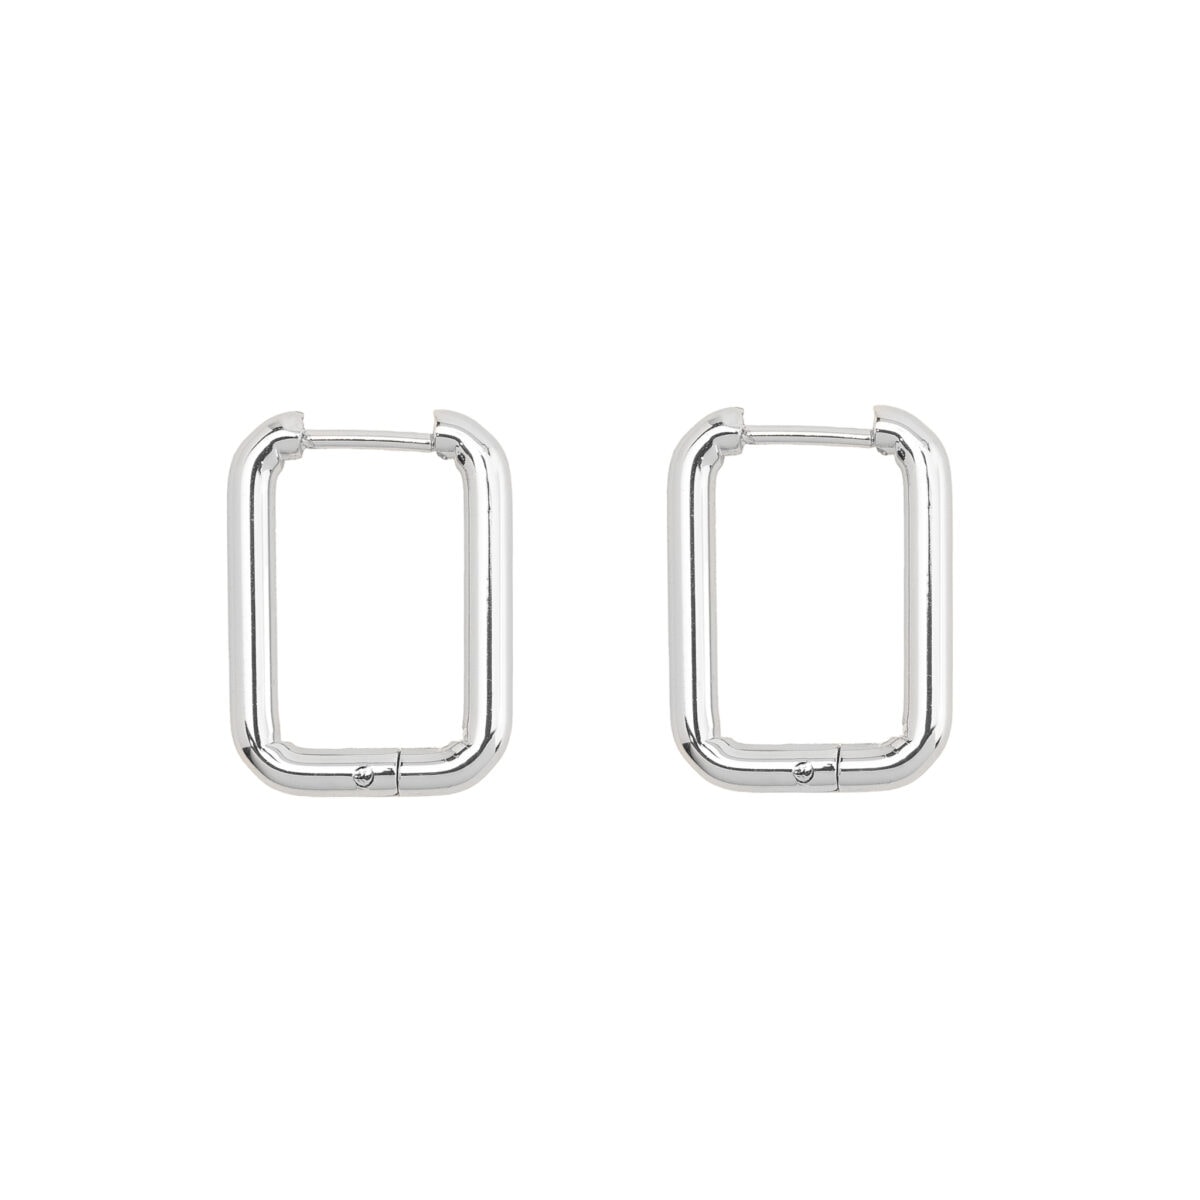 https://m.clubbella.co/product/silver-nova-earrings/ Nova SIlver Earrings (2)